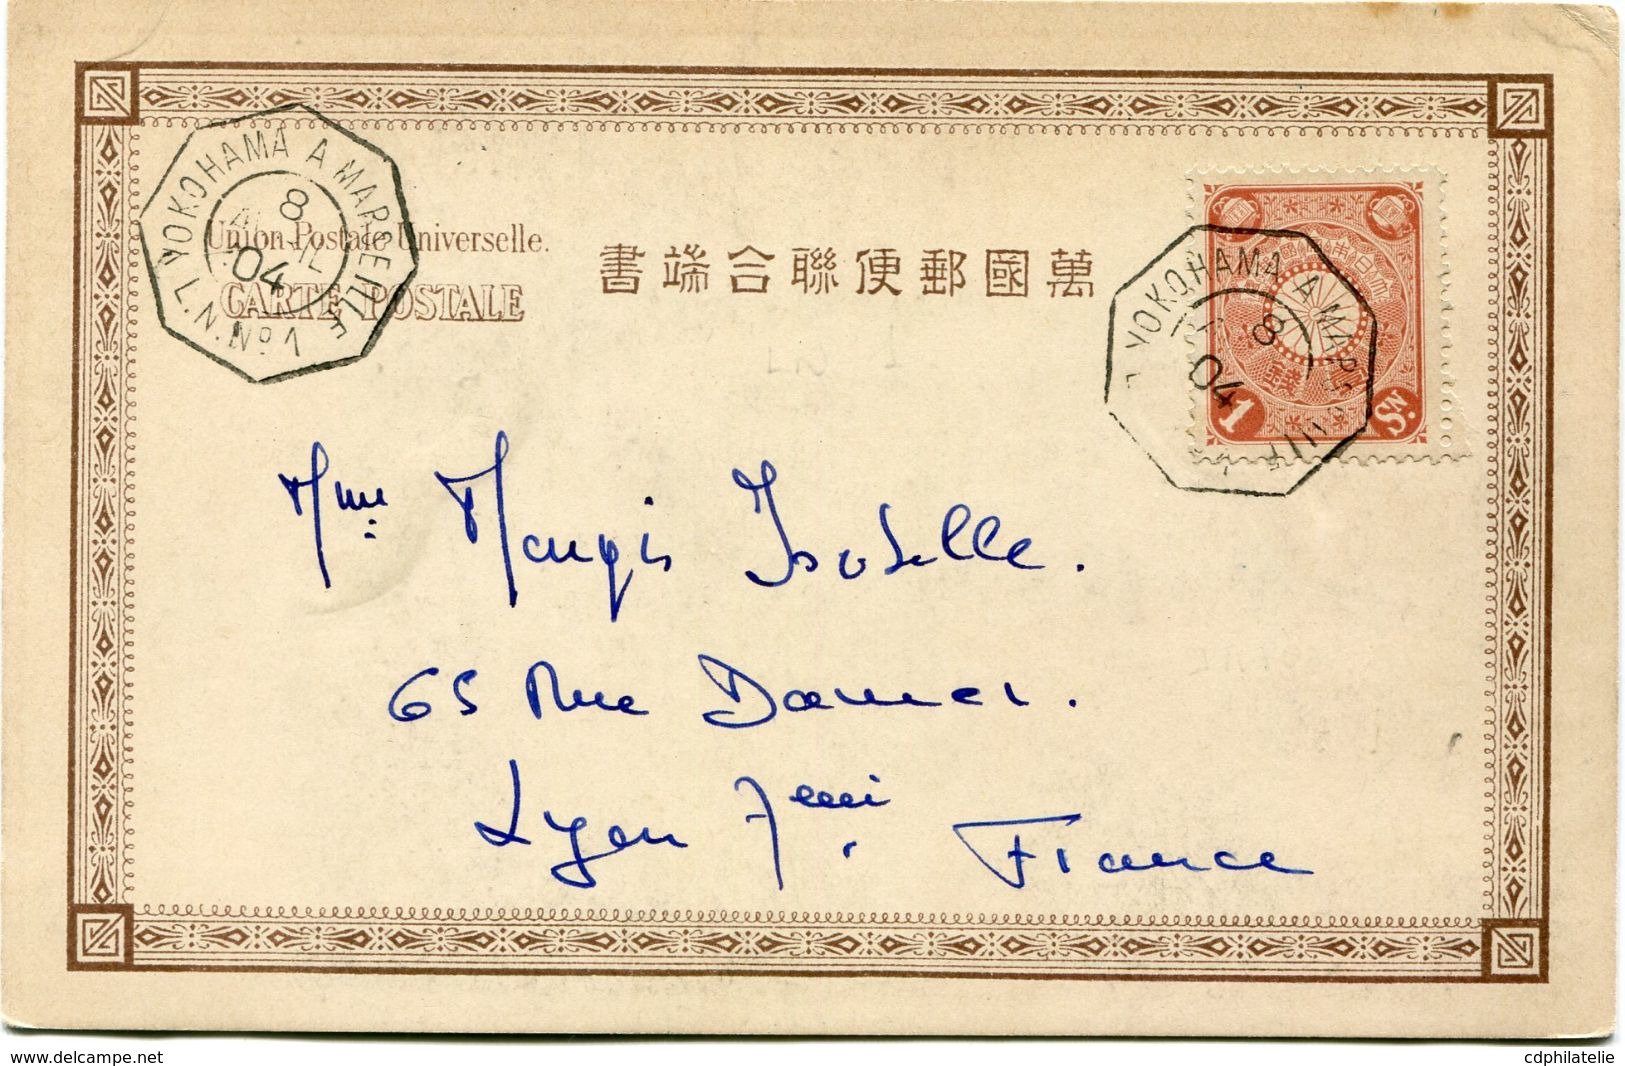 JAPON CARTE POSTALE DEPART YOKOHAMA A MARSEILLE 8 AVRIL 04 L. N. N°1 POUR LA FRANCE - Covers & Documents